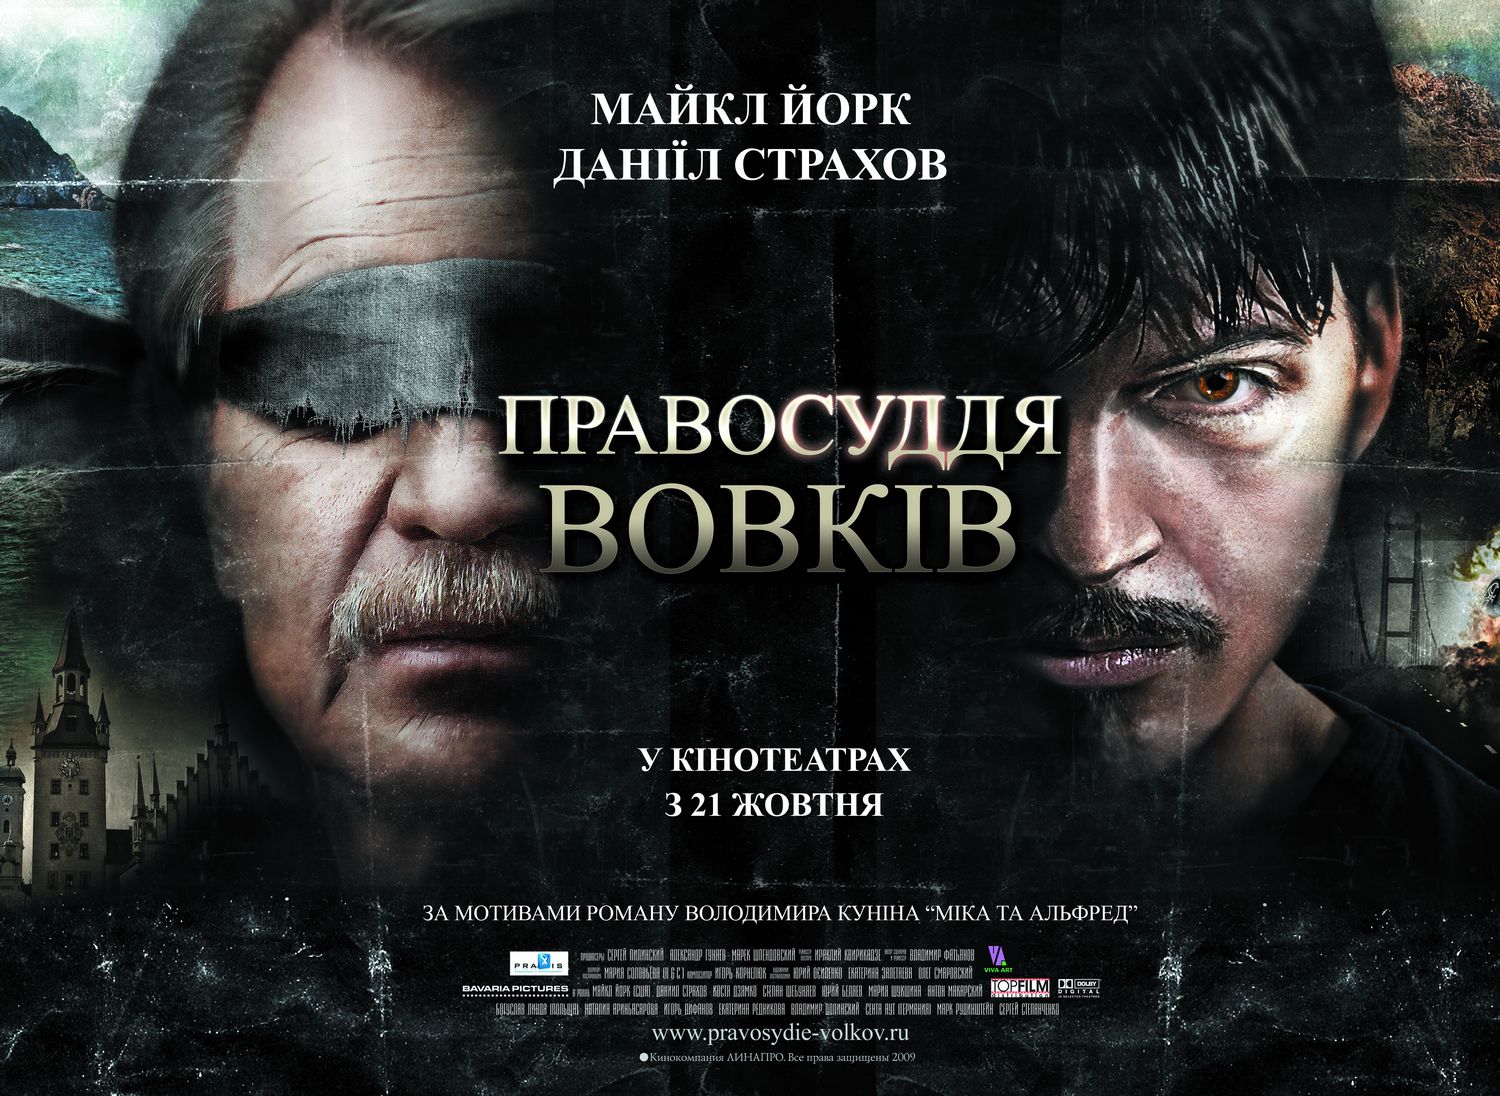 Extra Large Movie Poster Image for Pravosudiye volkov (#4 of 4)